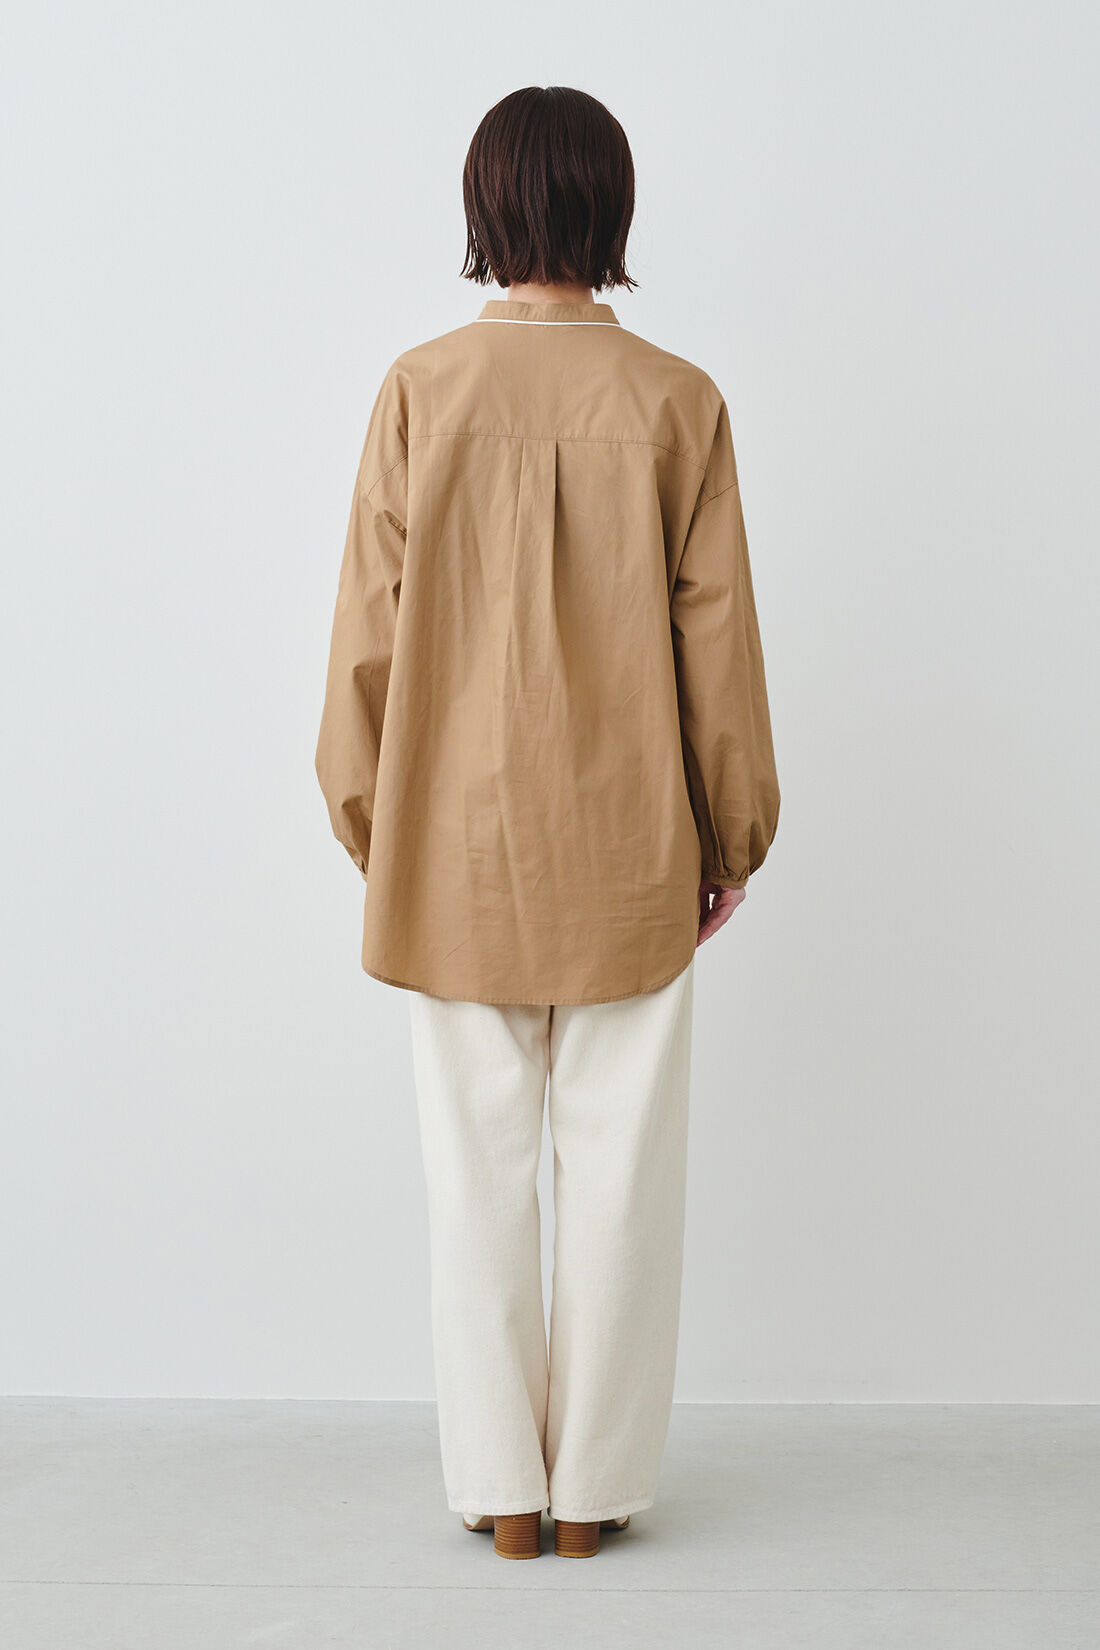 IEDIT|IEDIT[イディット]　コーデのポイントになる きれいめパイピングシャツ〈ネイビー〉|モデル身長：160cm・着用サイズ：M ※着用イメージです。お届けするカラーとは異なります。